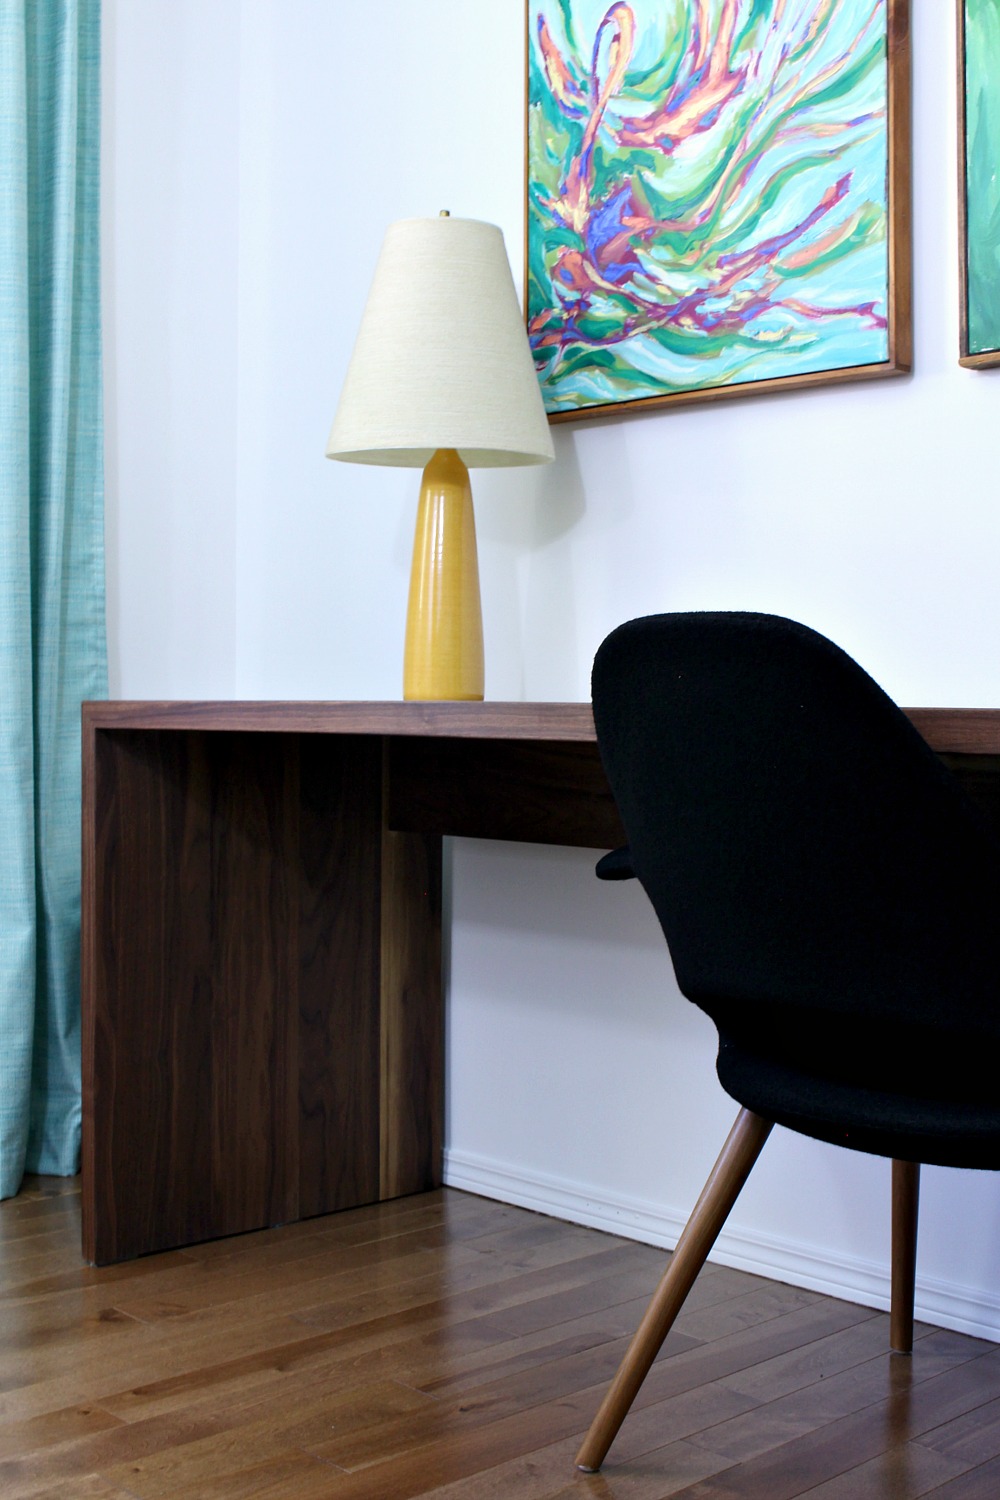 DIY Solid Walnut Desk Tutorial + Photos // www.danslelakehouse.com // @danslelakehouse